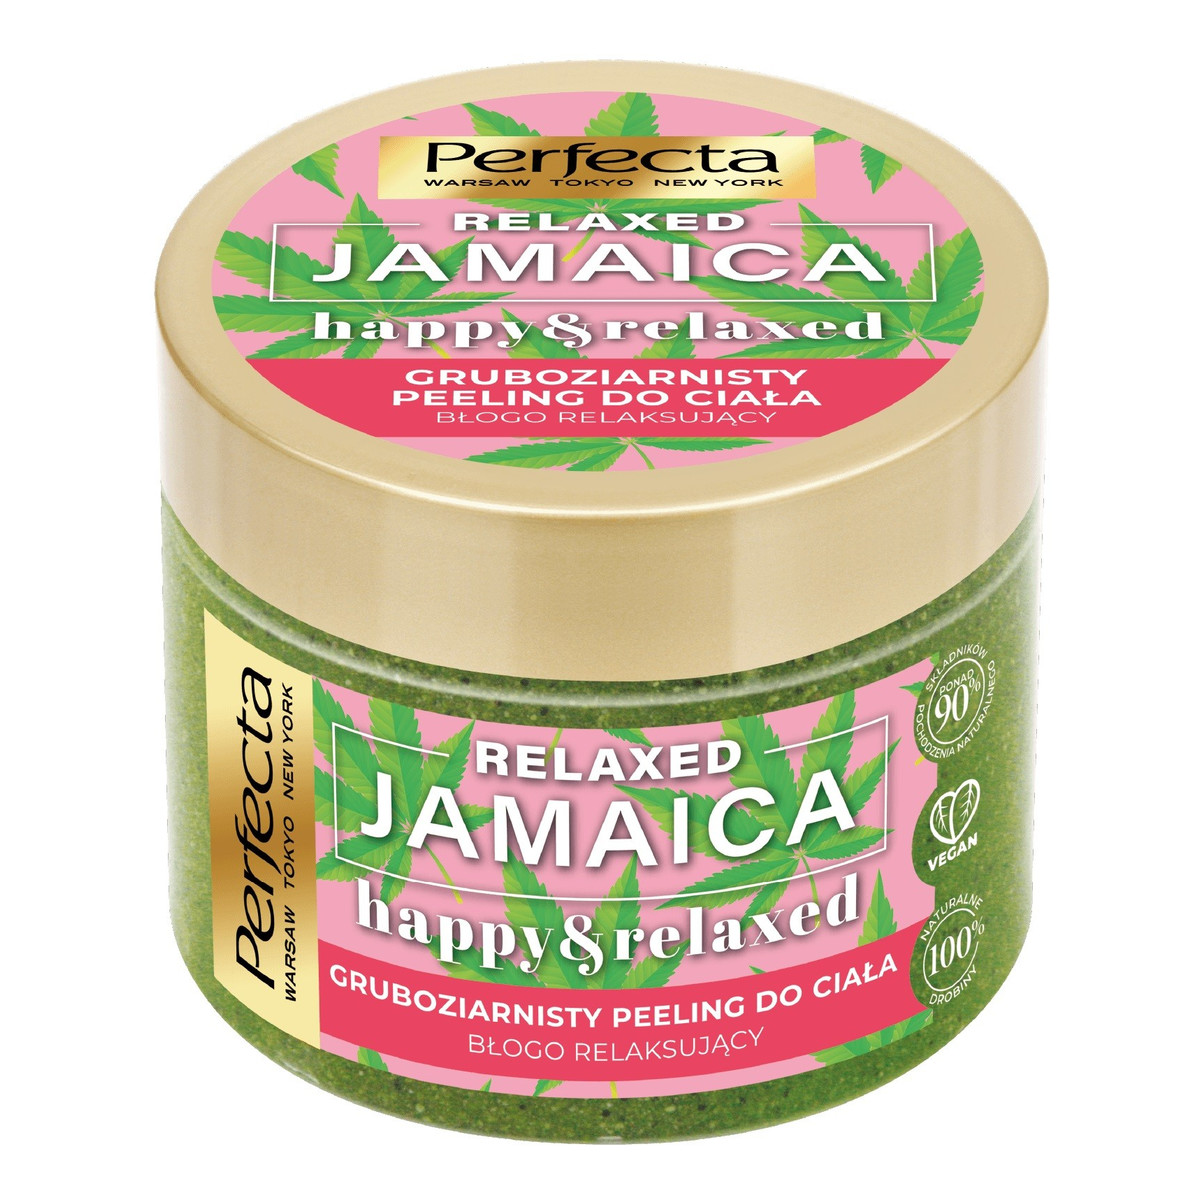 Perfecta Jamaica Relaxed Gruboziarnisty Peeling do ciała - relaksujący 300g